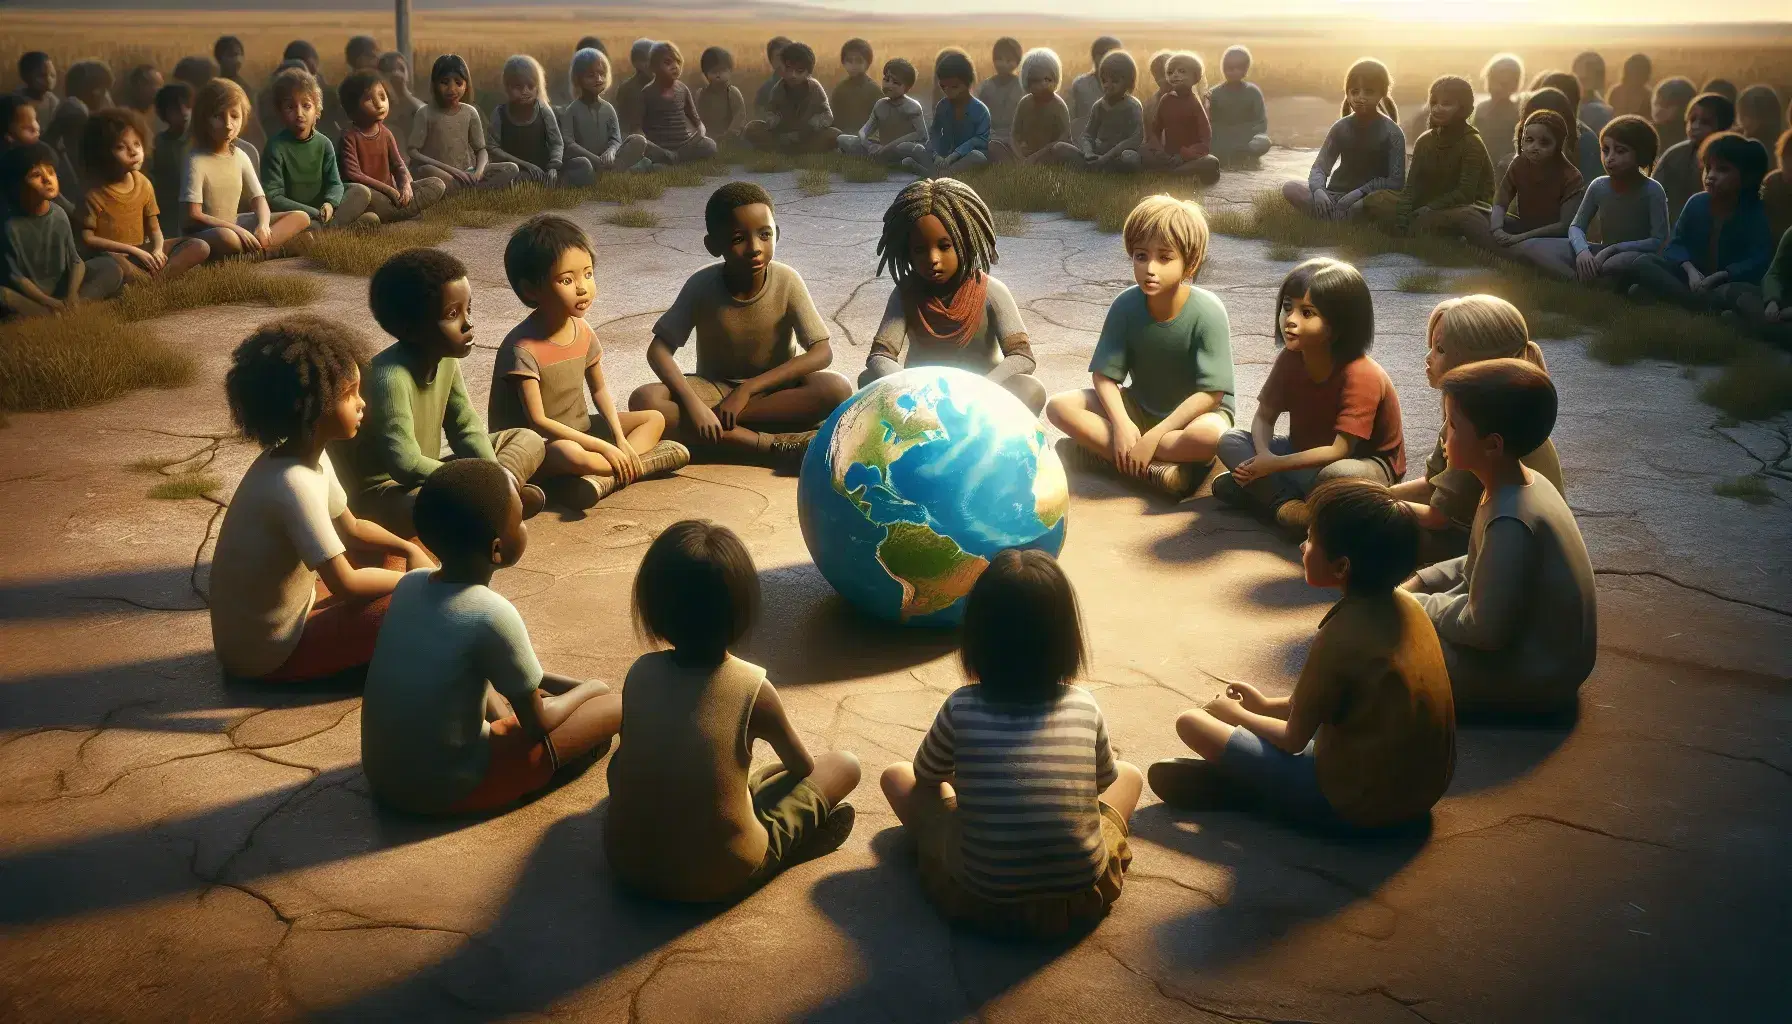 Bambini di diverse etnie seduti in cerchio attorno a un globo terrestre, esplorando con interesse la geografia in un ambiente naturale al tramonto.